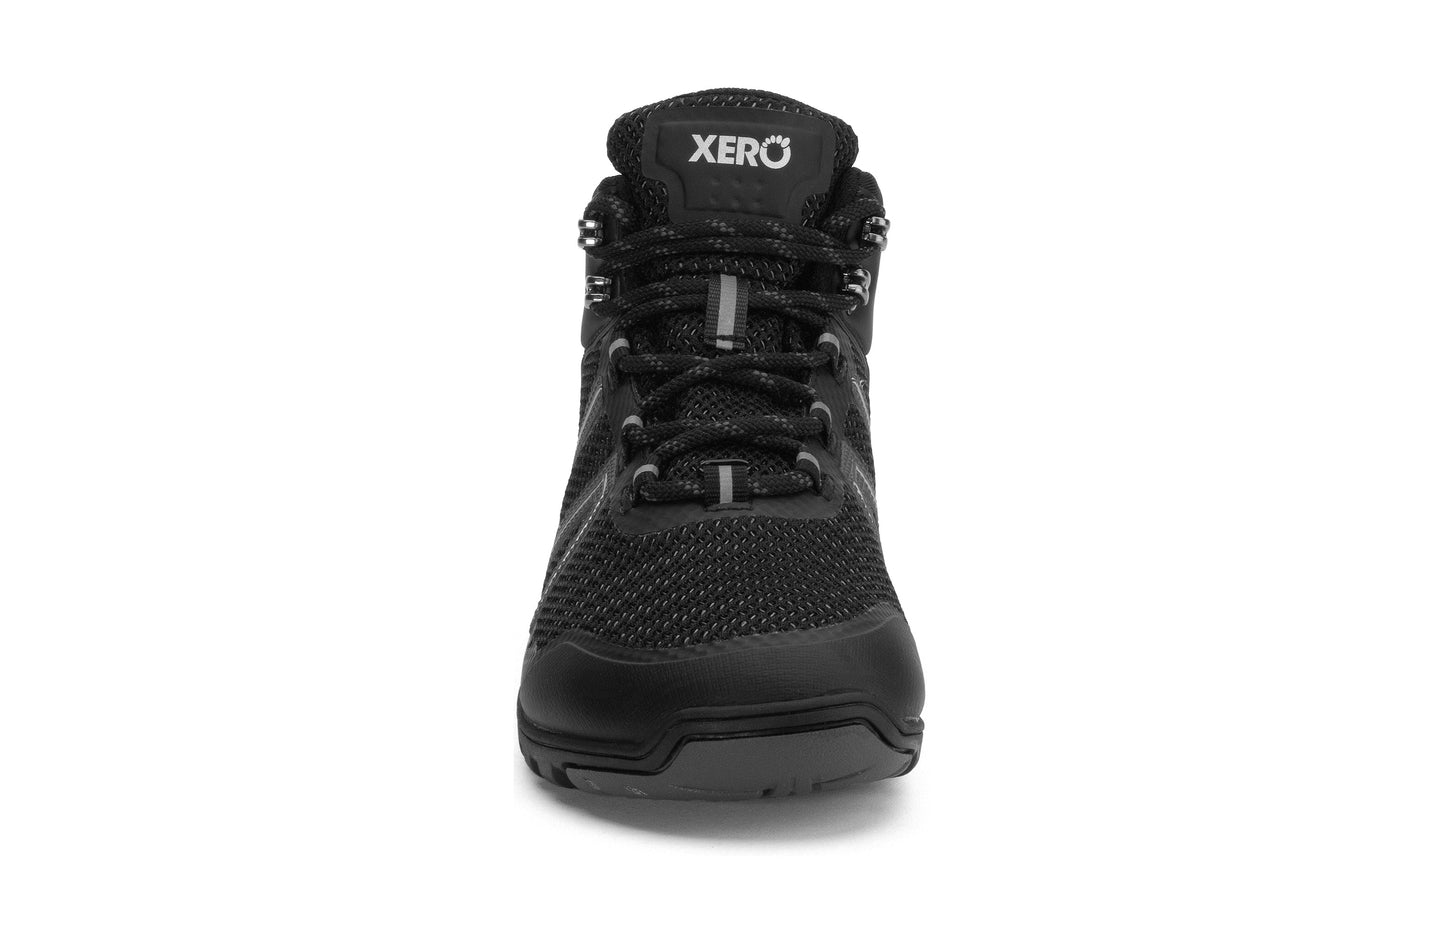 Xero Shoes Xcursion Fusion Womens barfods vandrestøvler til kvinder i farven black titanium, forfra